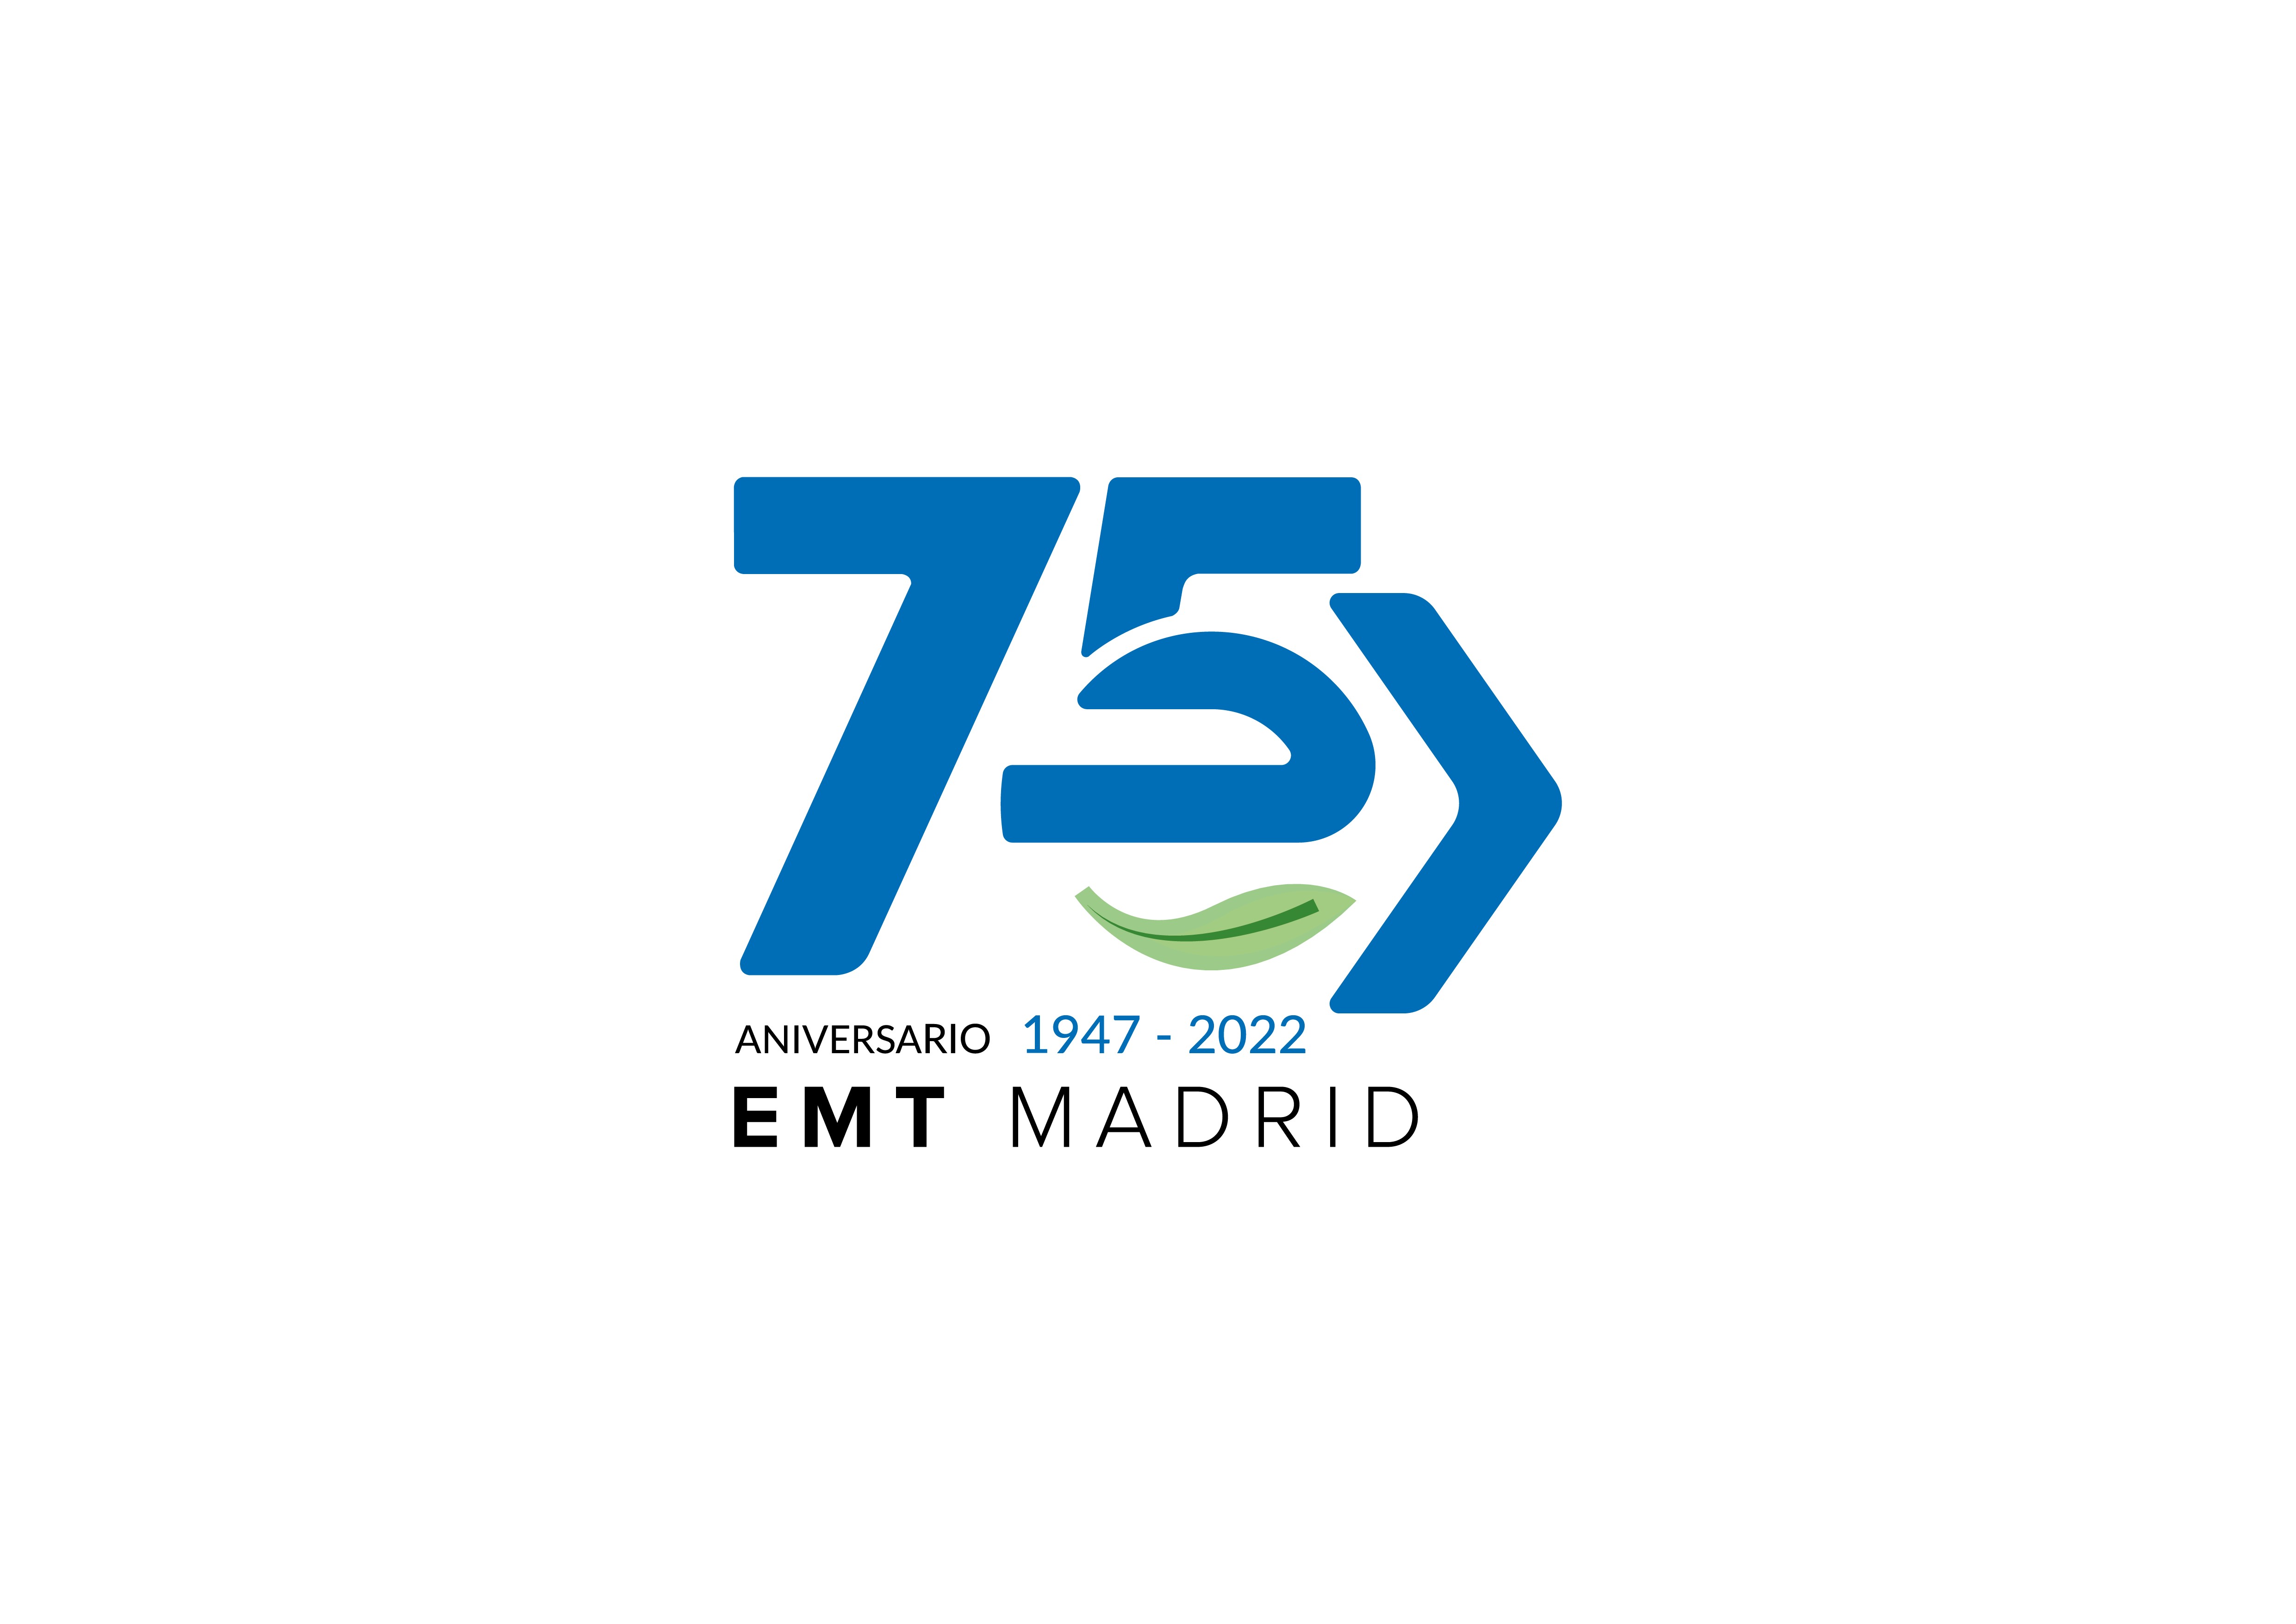 Ya hay ganador del concurso de diseño del logo conmemorativo del 75 aniversario de EMT